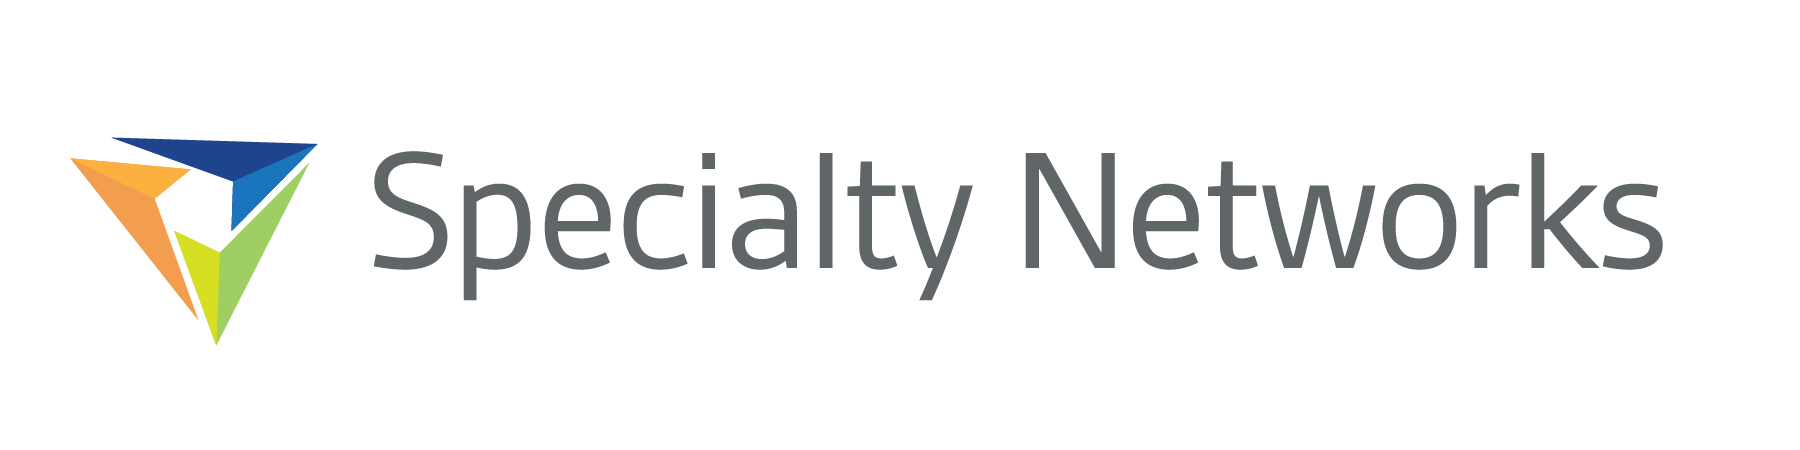 Specialty Networks Company Logo